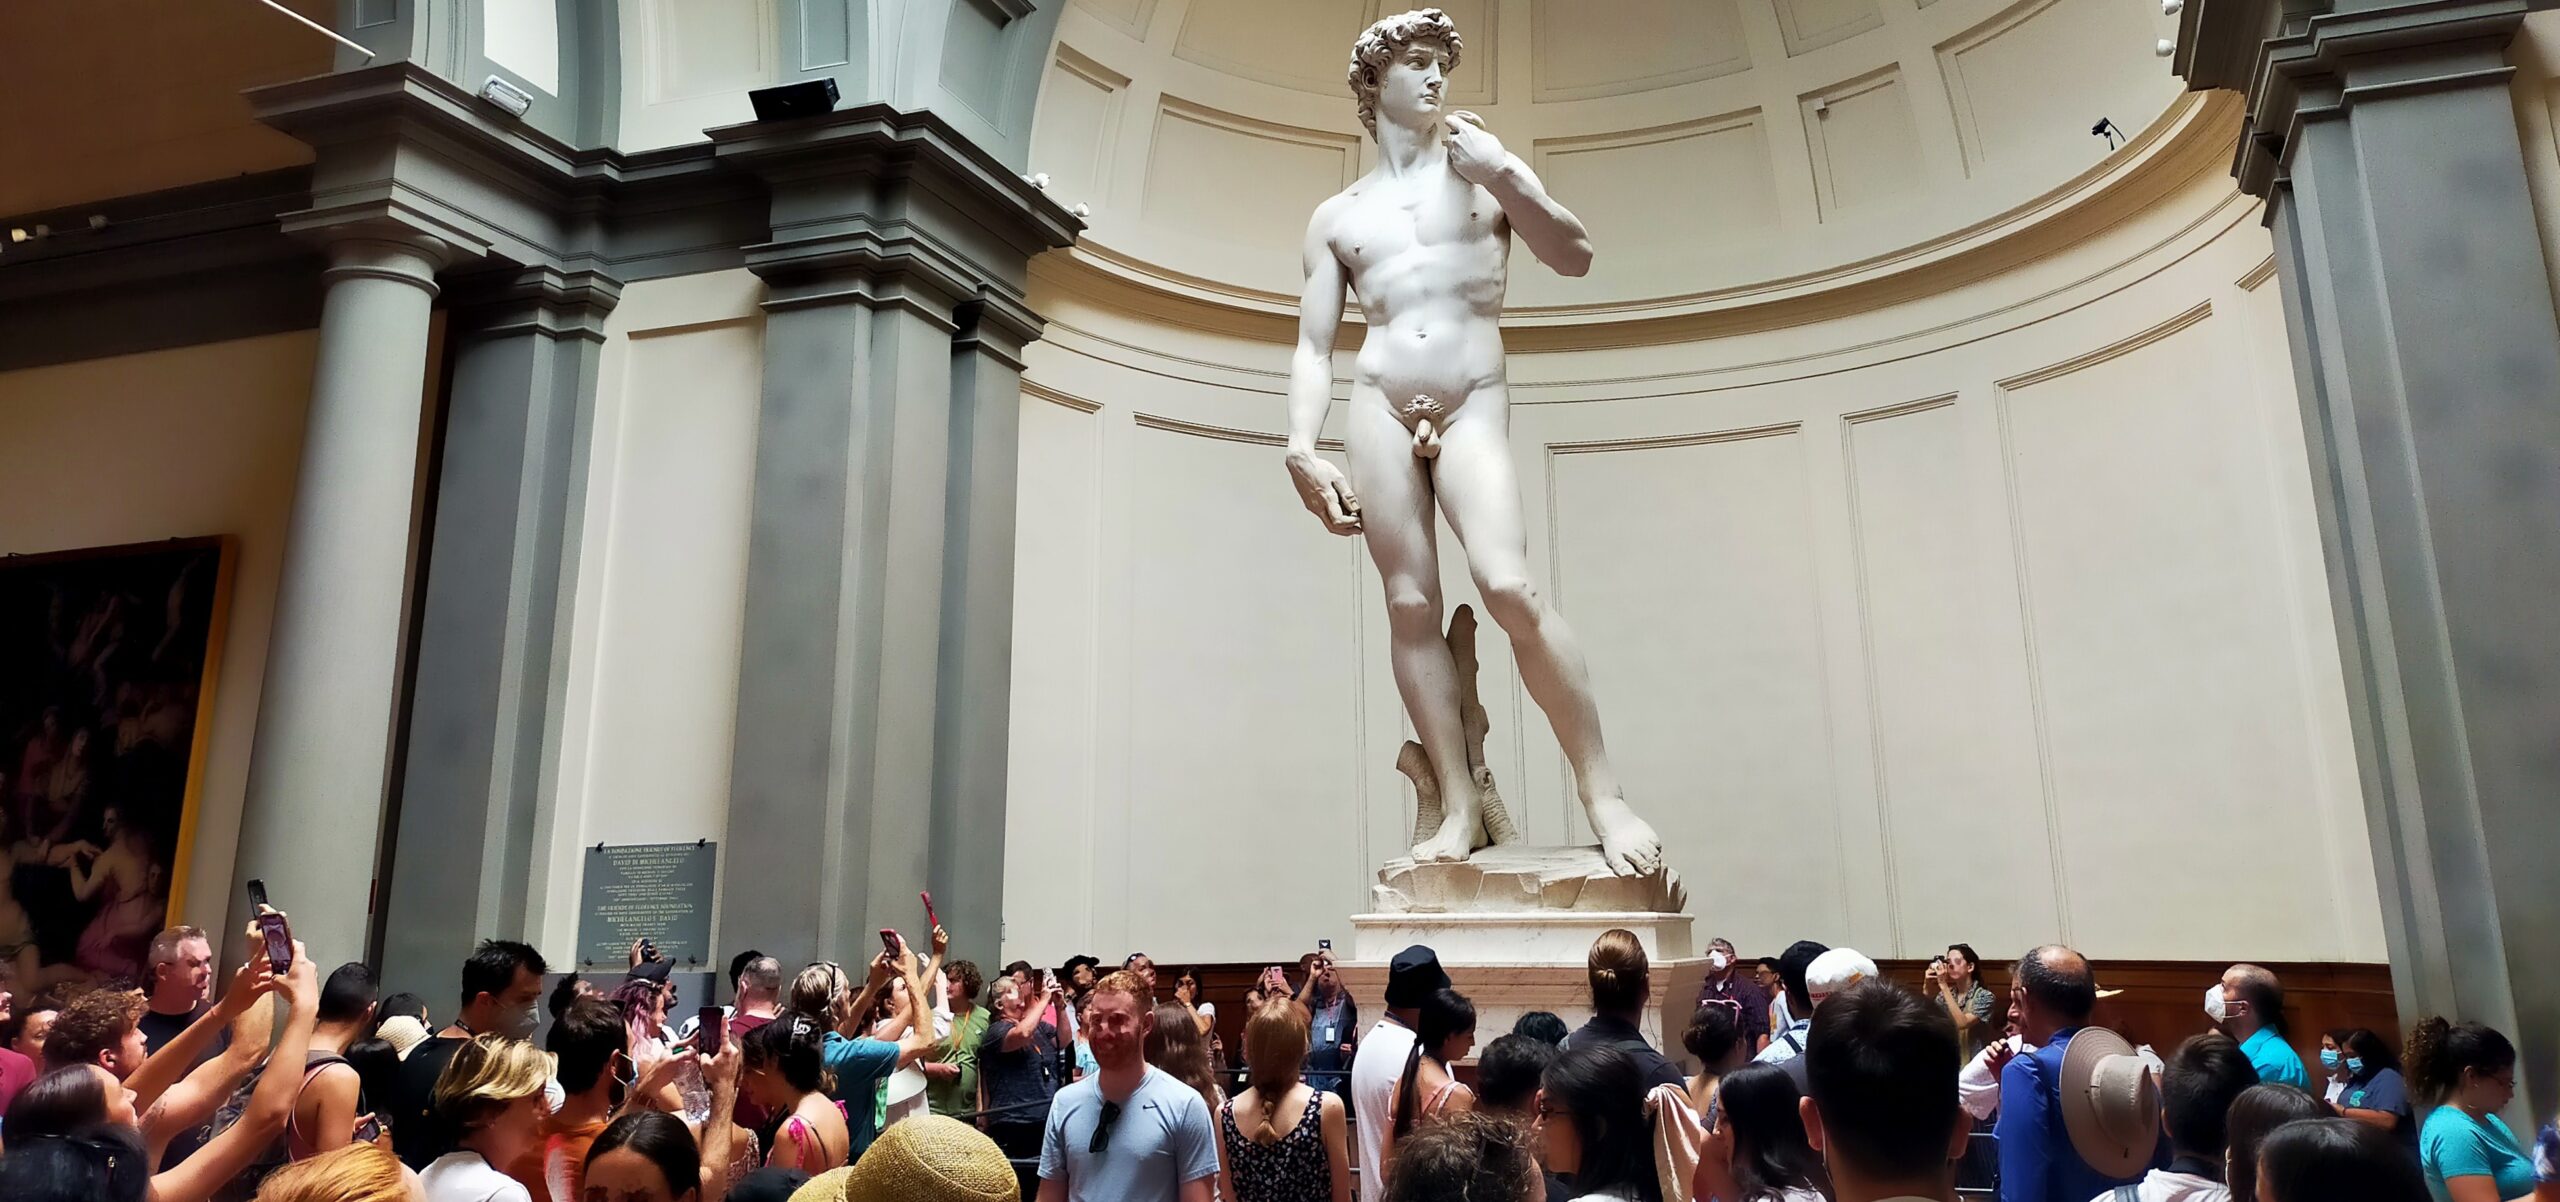 La calca attorno al David nella Galleria dell’Accademia di Firenze